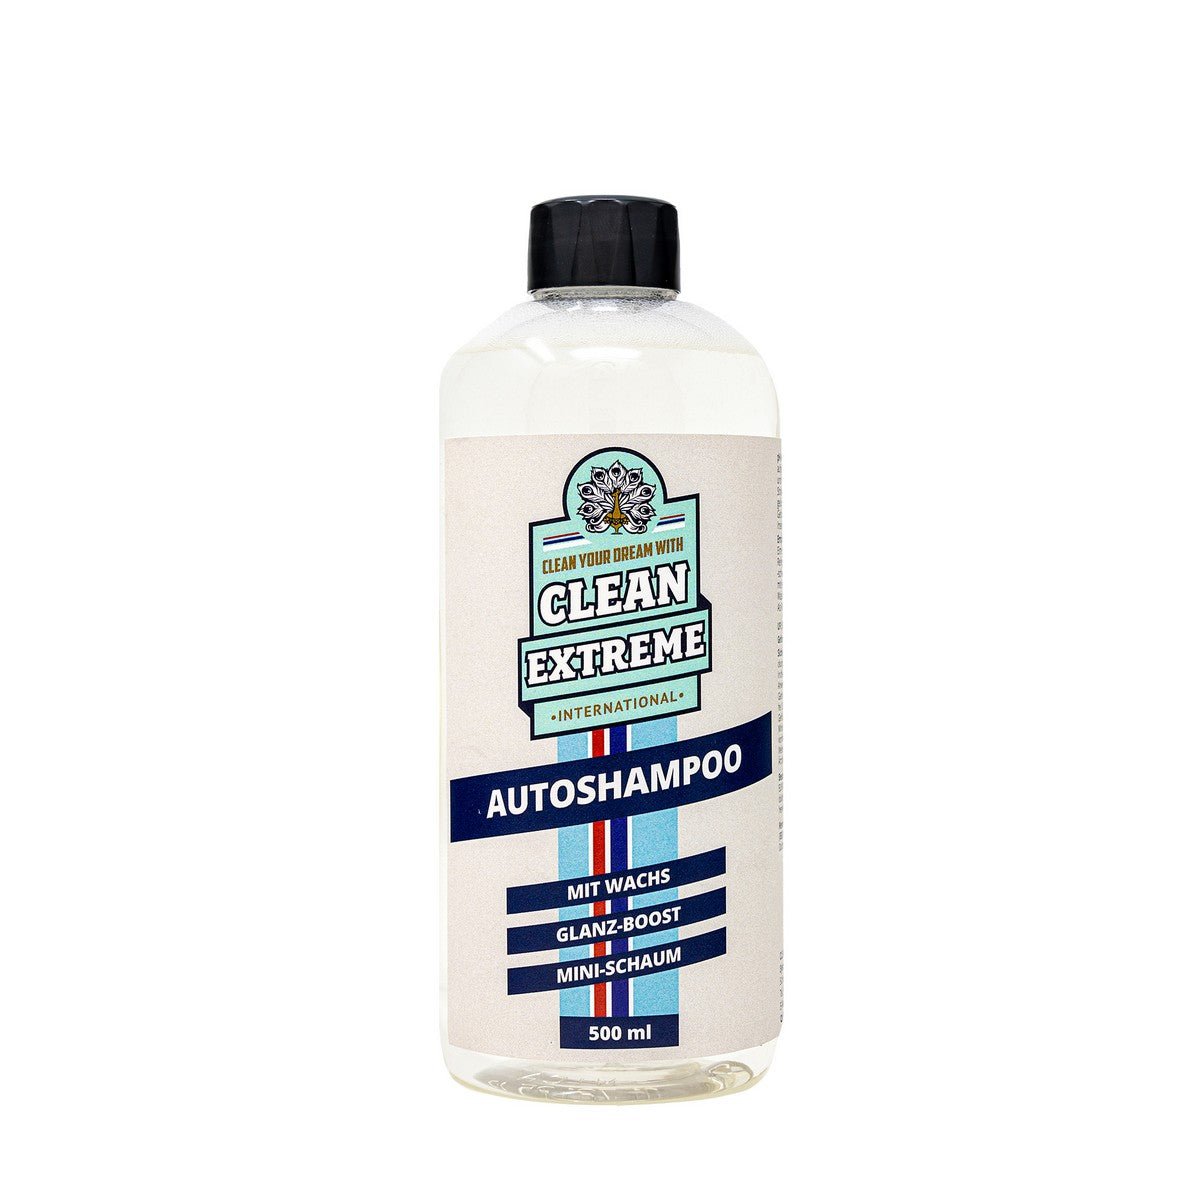 Autoshampoo Konzentrat mit Wachs 0,5 Liter - CLEANEXTREME